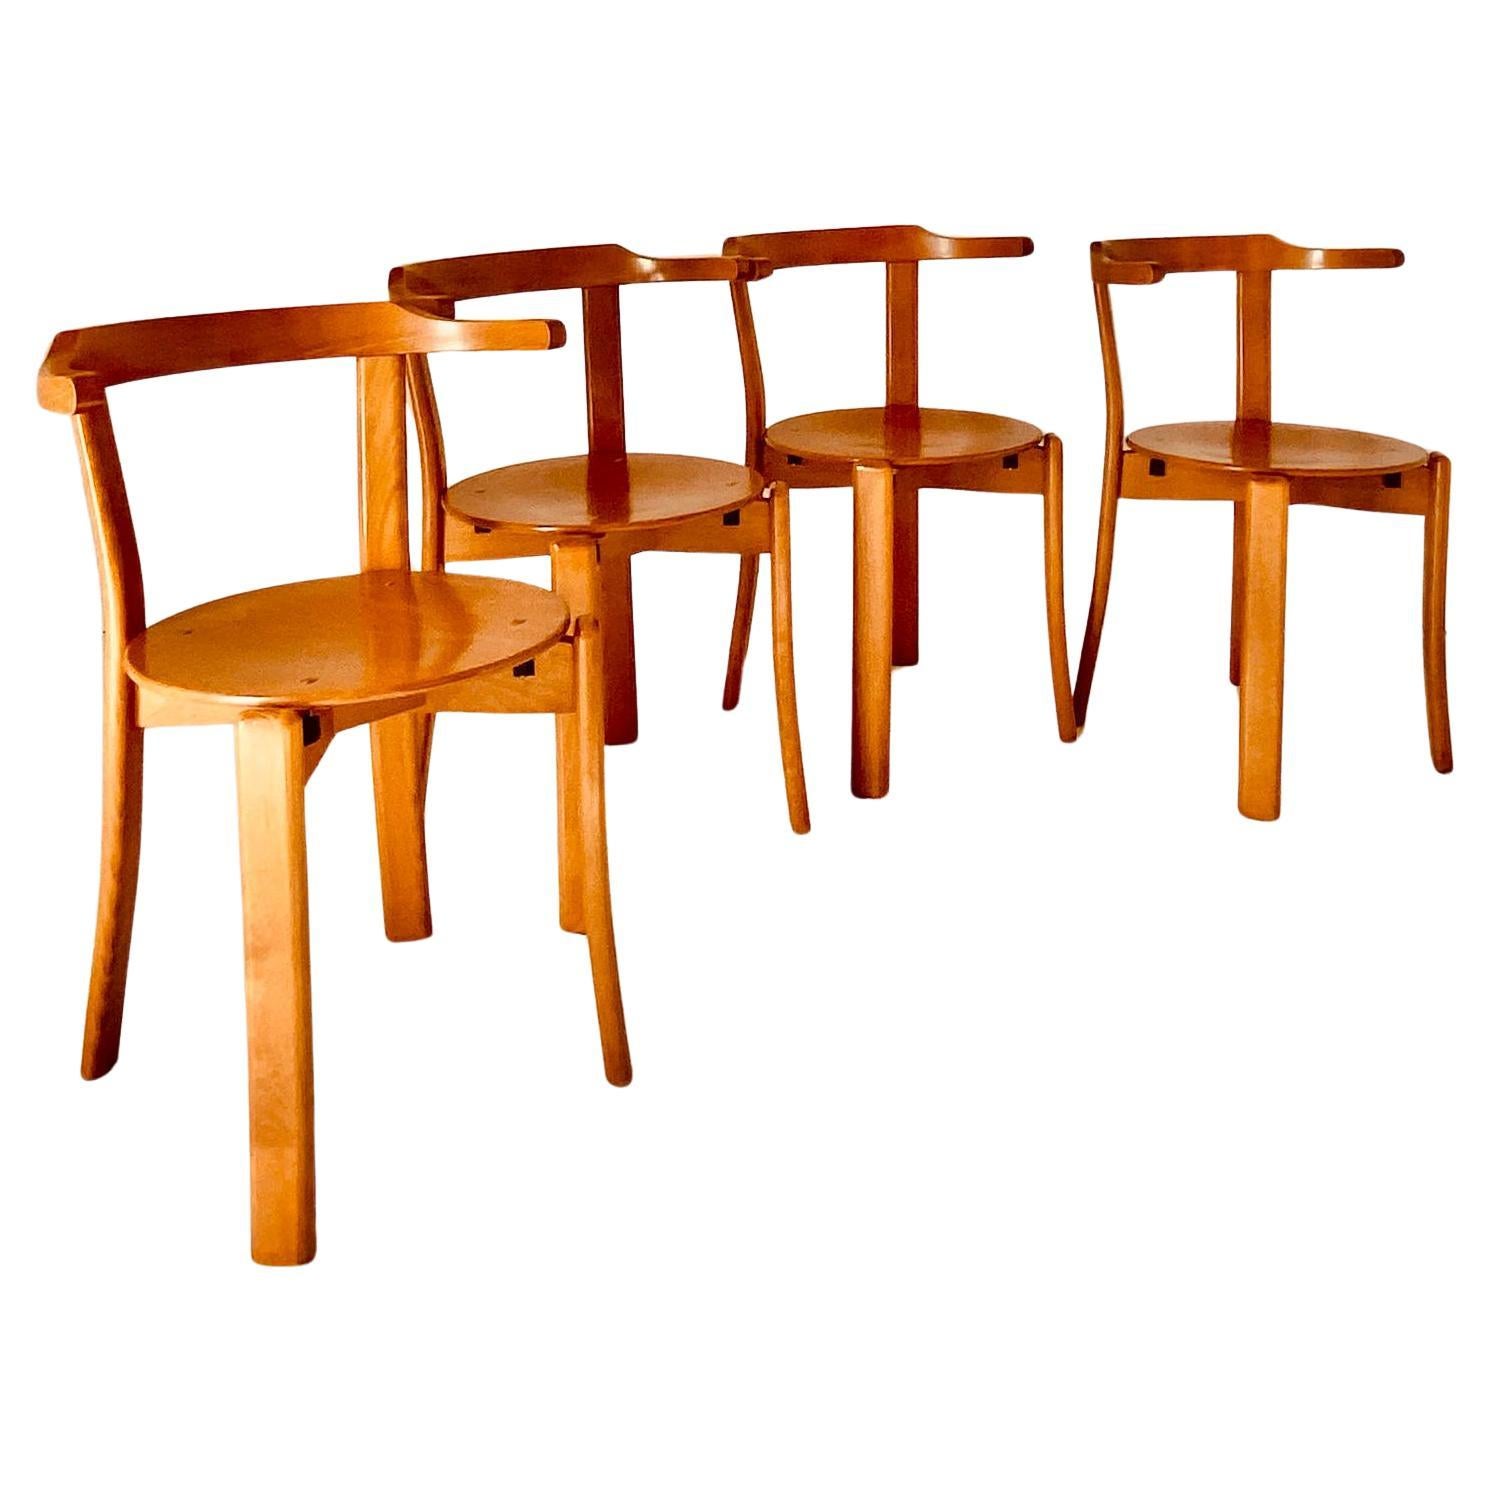 Ensemble de chaises de salle à manger vintage, dans le style de Bruno Rey, Italie 1970. Chaises en hêtre massif avec dossier en bois courbé raffiné et assise ronde. L'ensemble a été restauré comme suit :
Le bois a été poli et réparé là où c'était